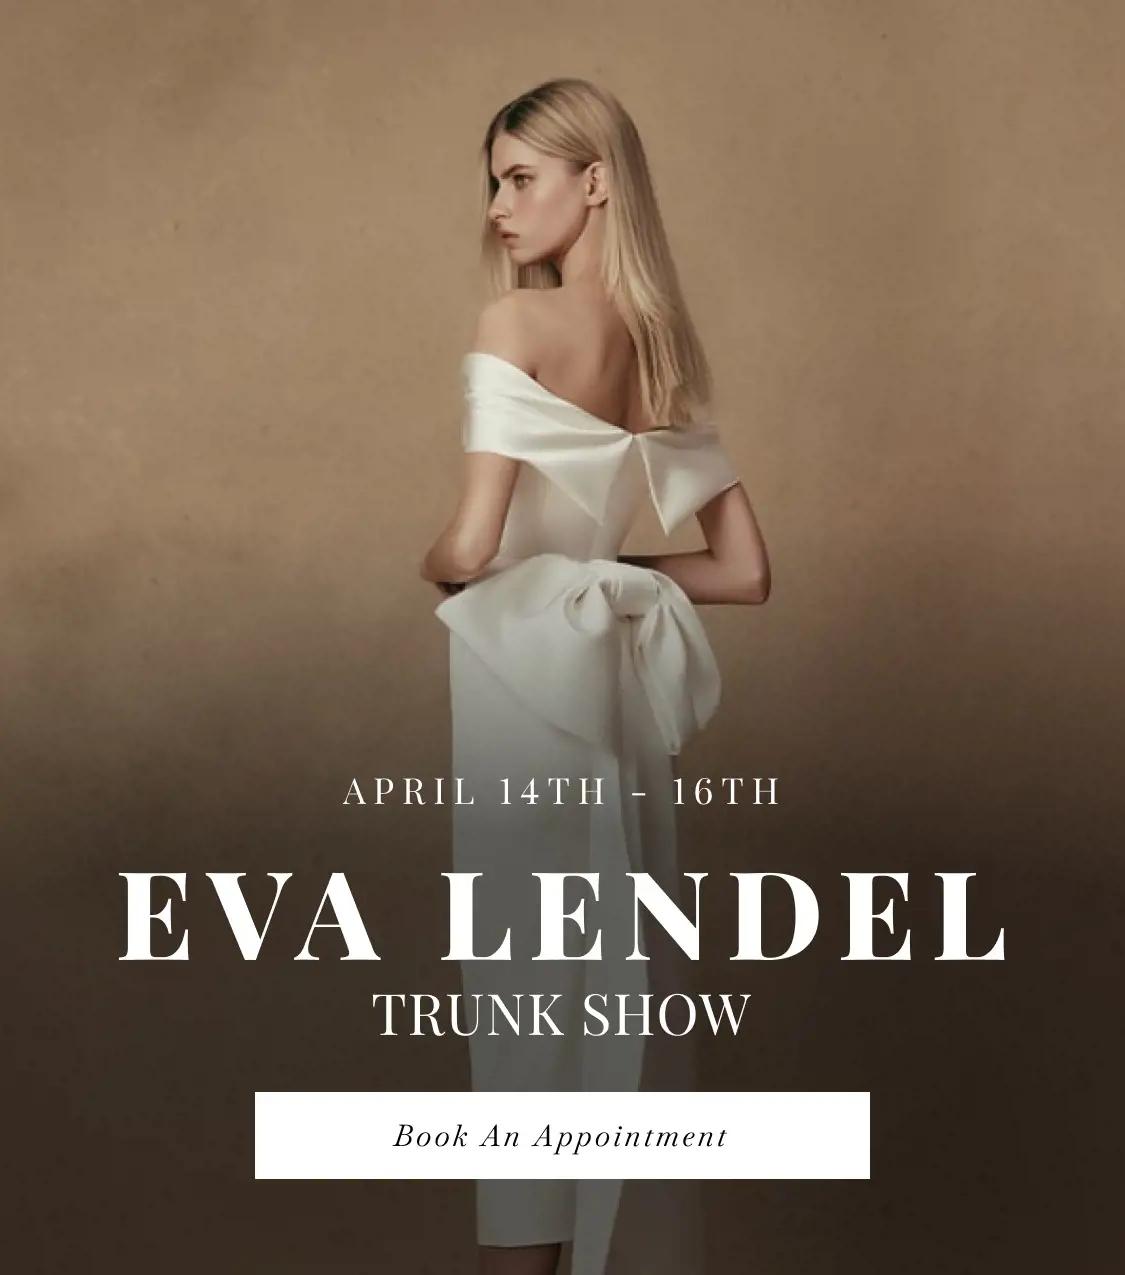 "Eva Lendel Trunk Show" banner for mobile